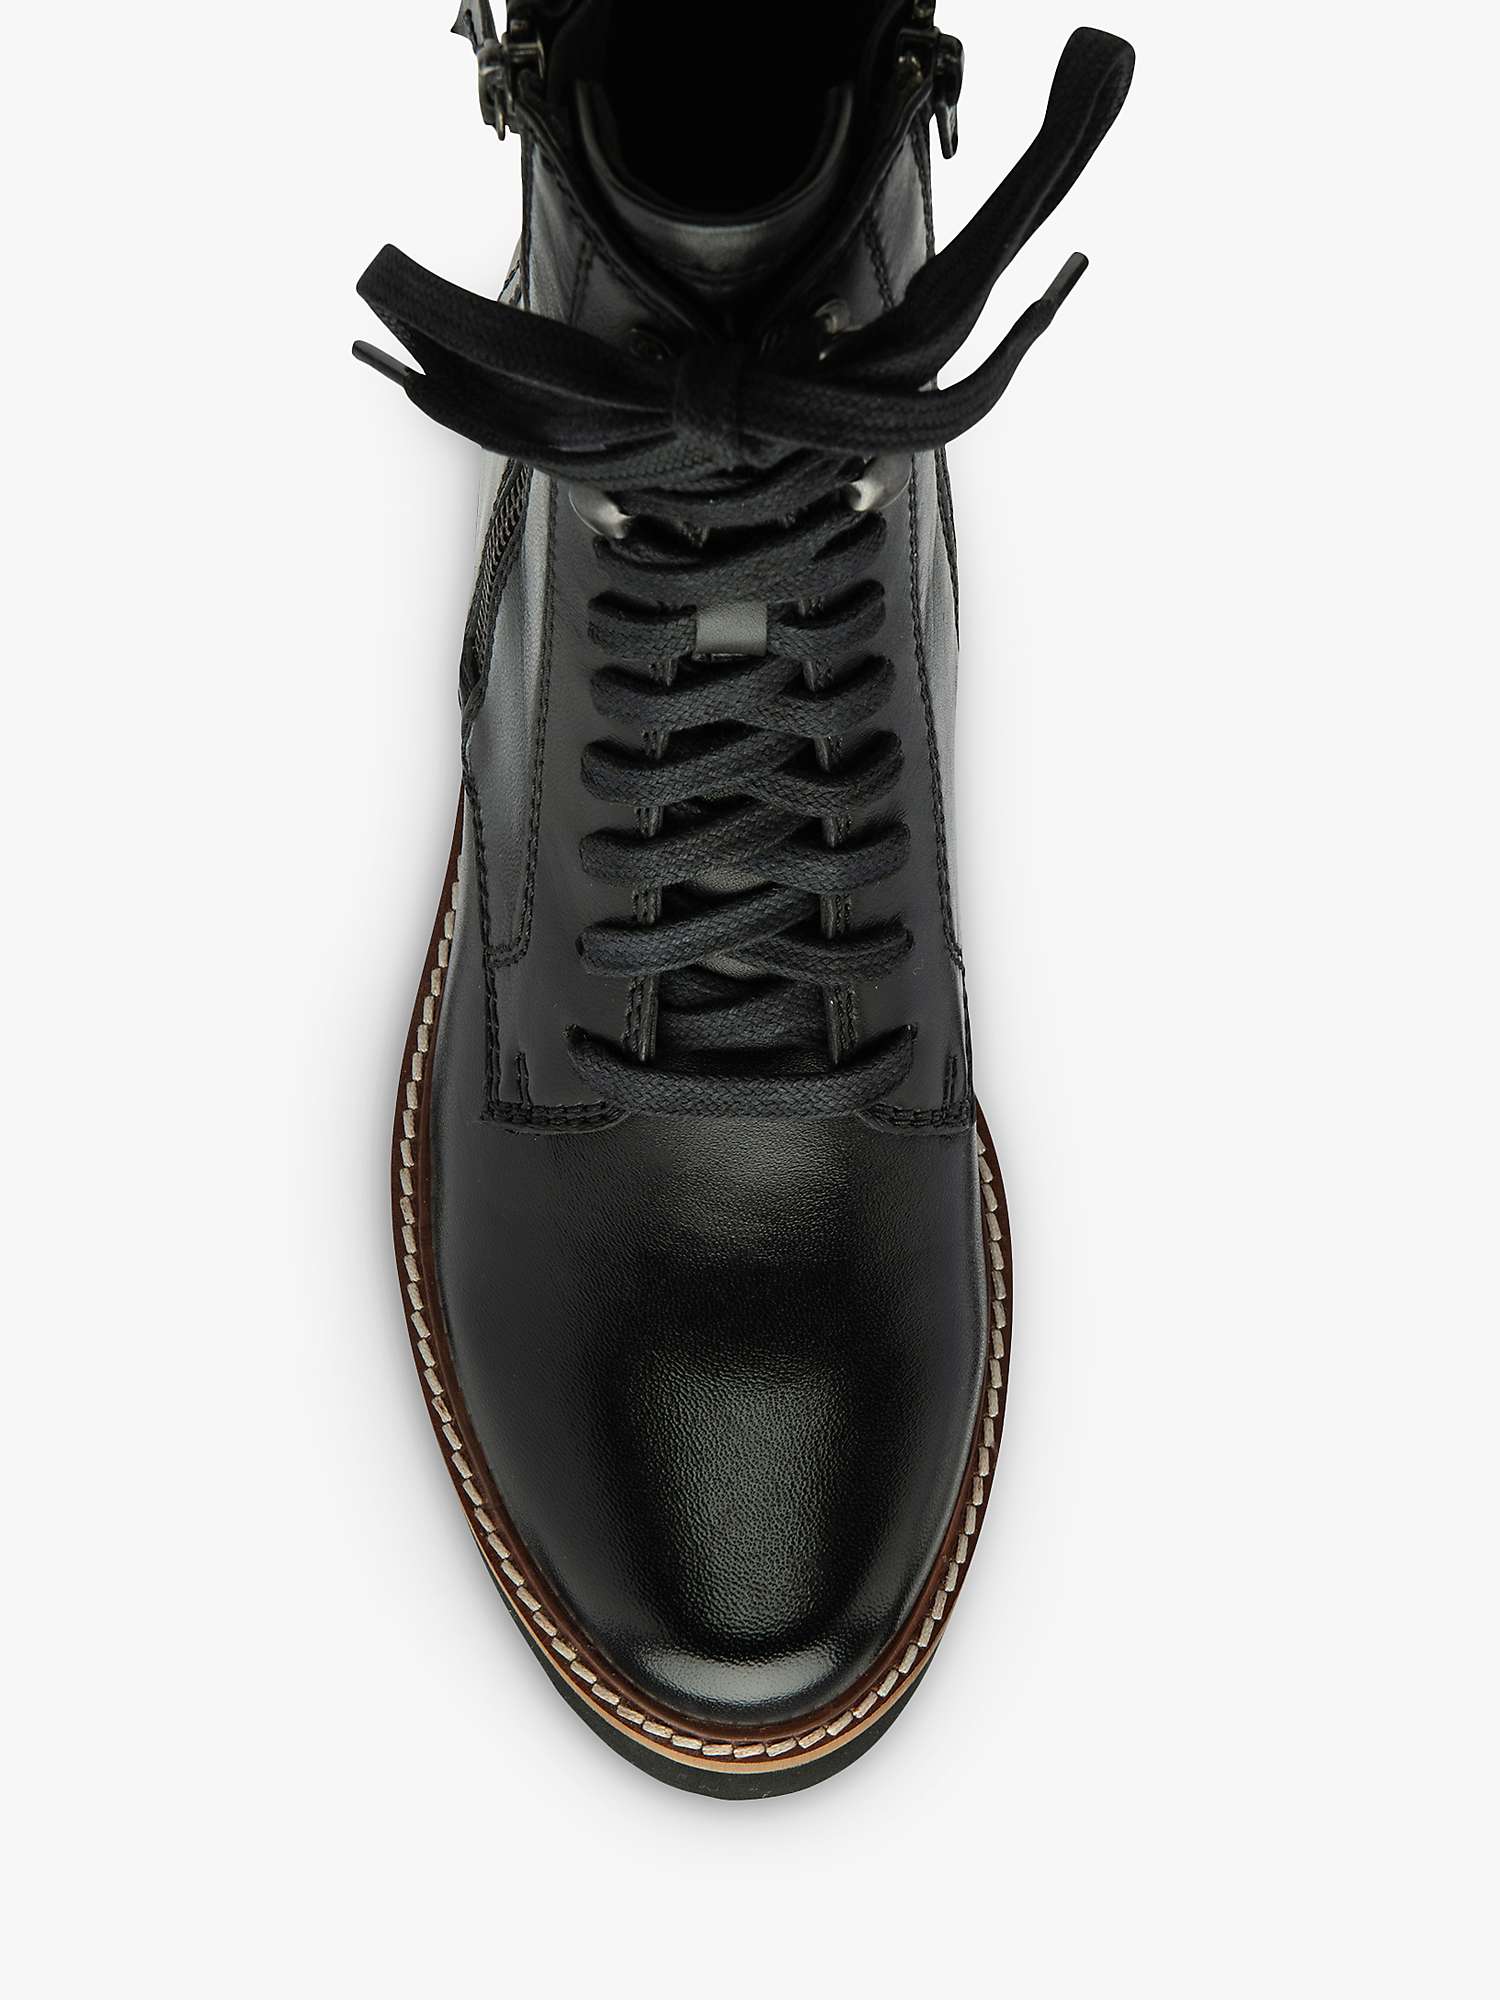 Buy Ravel Dyce Leather Biker Boots, Black Online at johnlewis.com